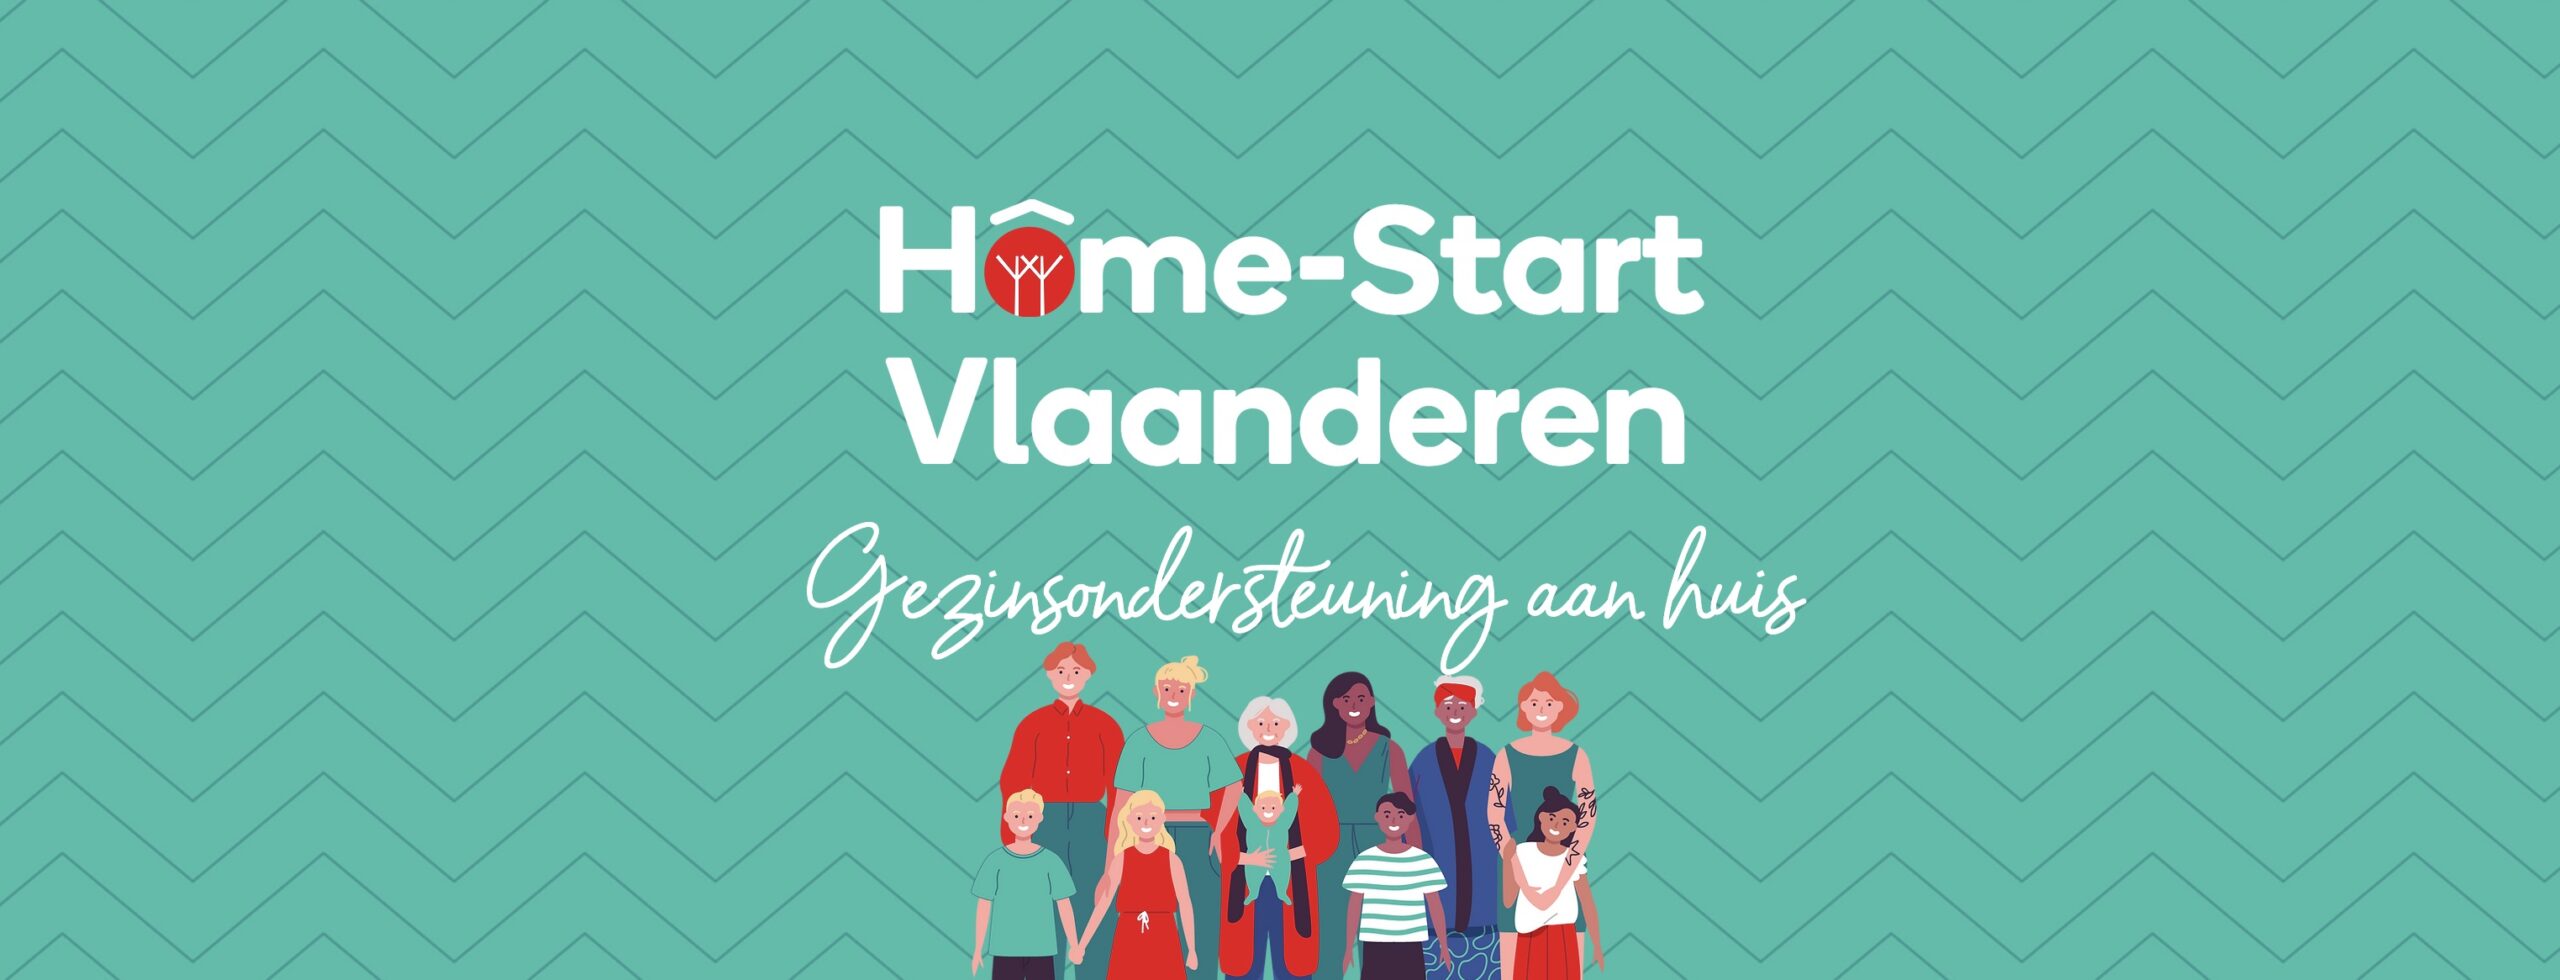 Home-Start Vlaanderen